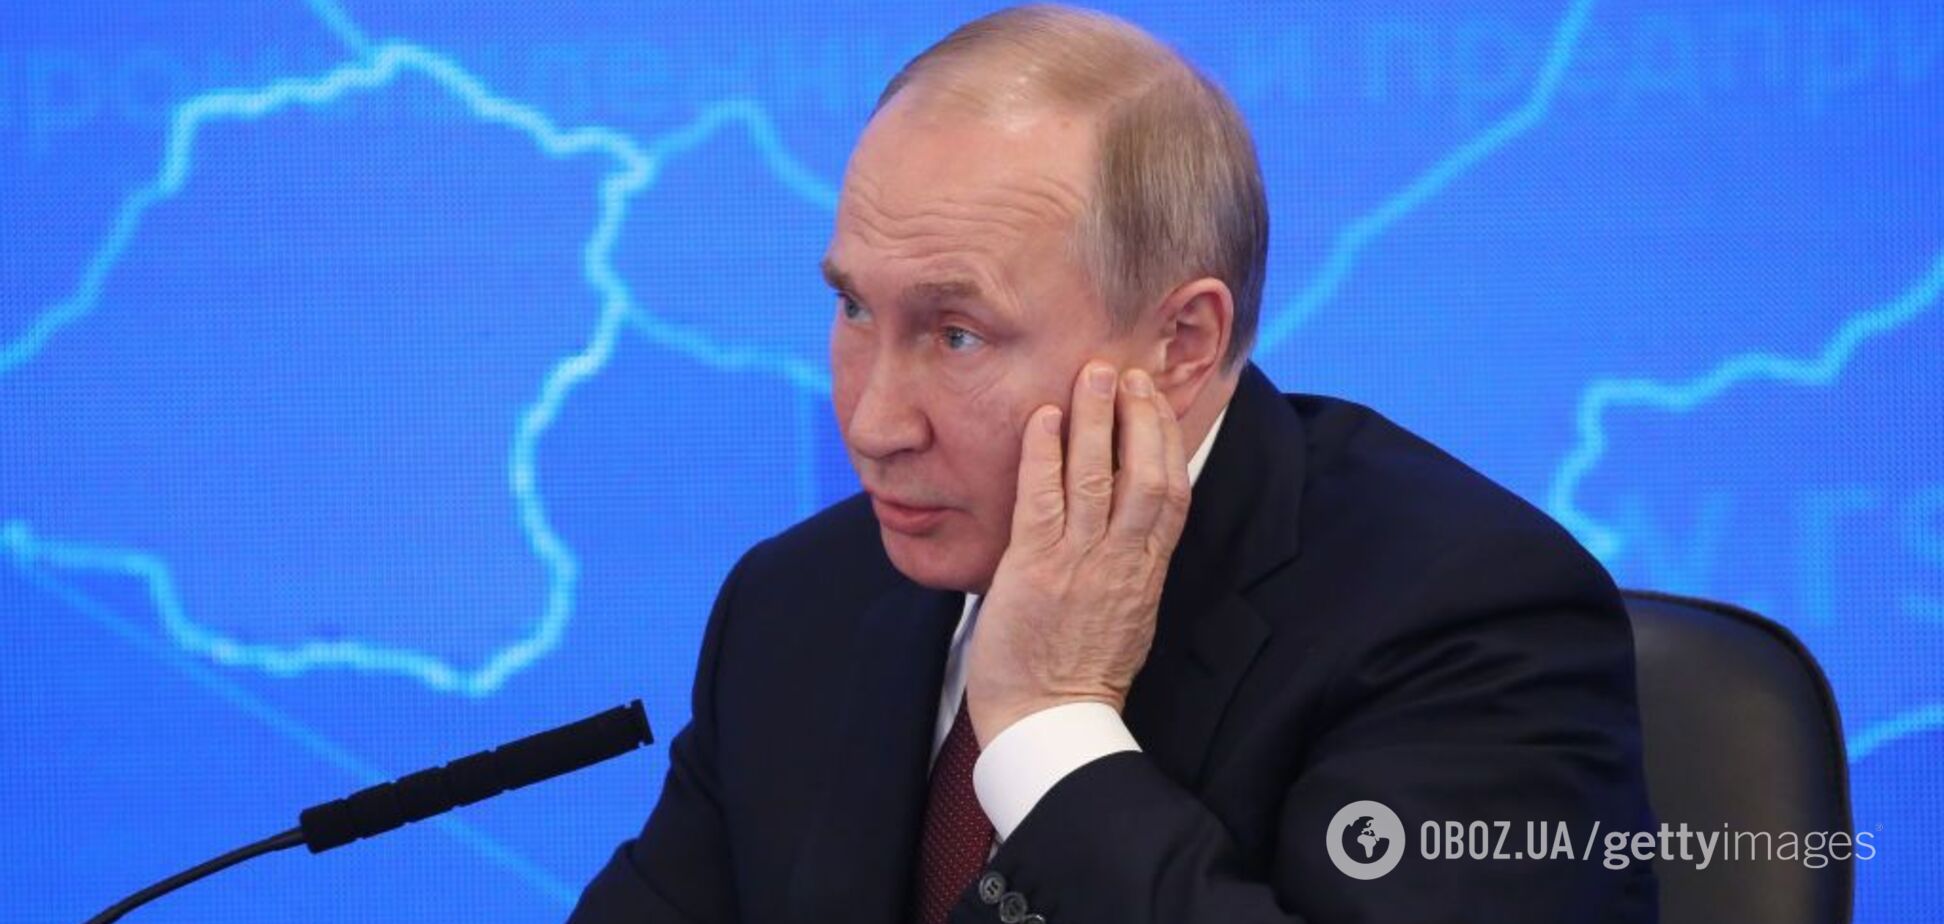 'Все проверим': в Кремле впервые прокомментировали падающий рейтинг Путина